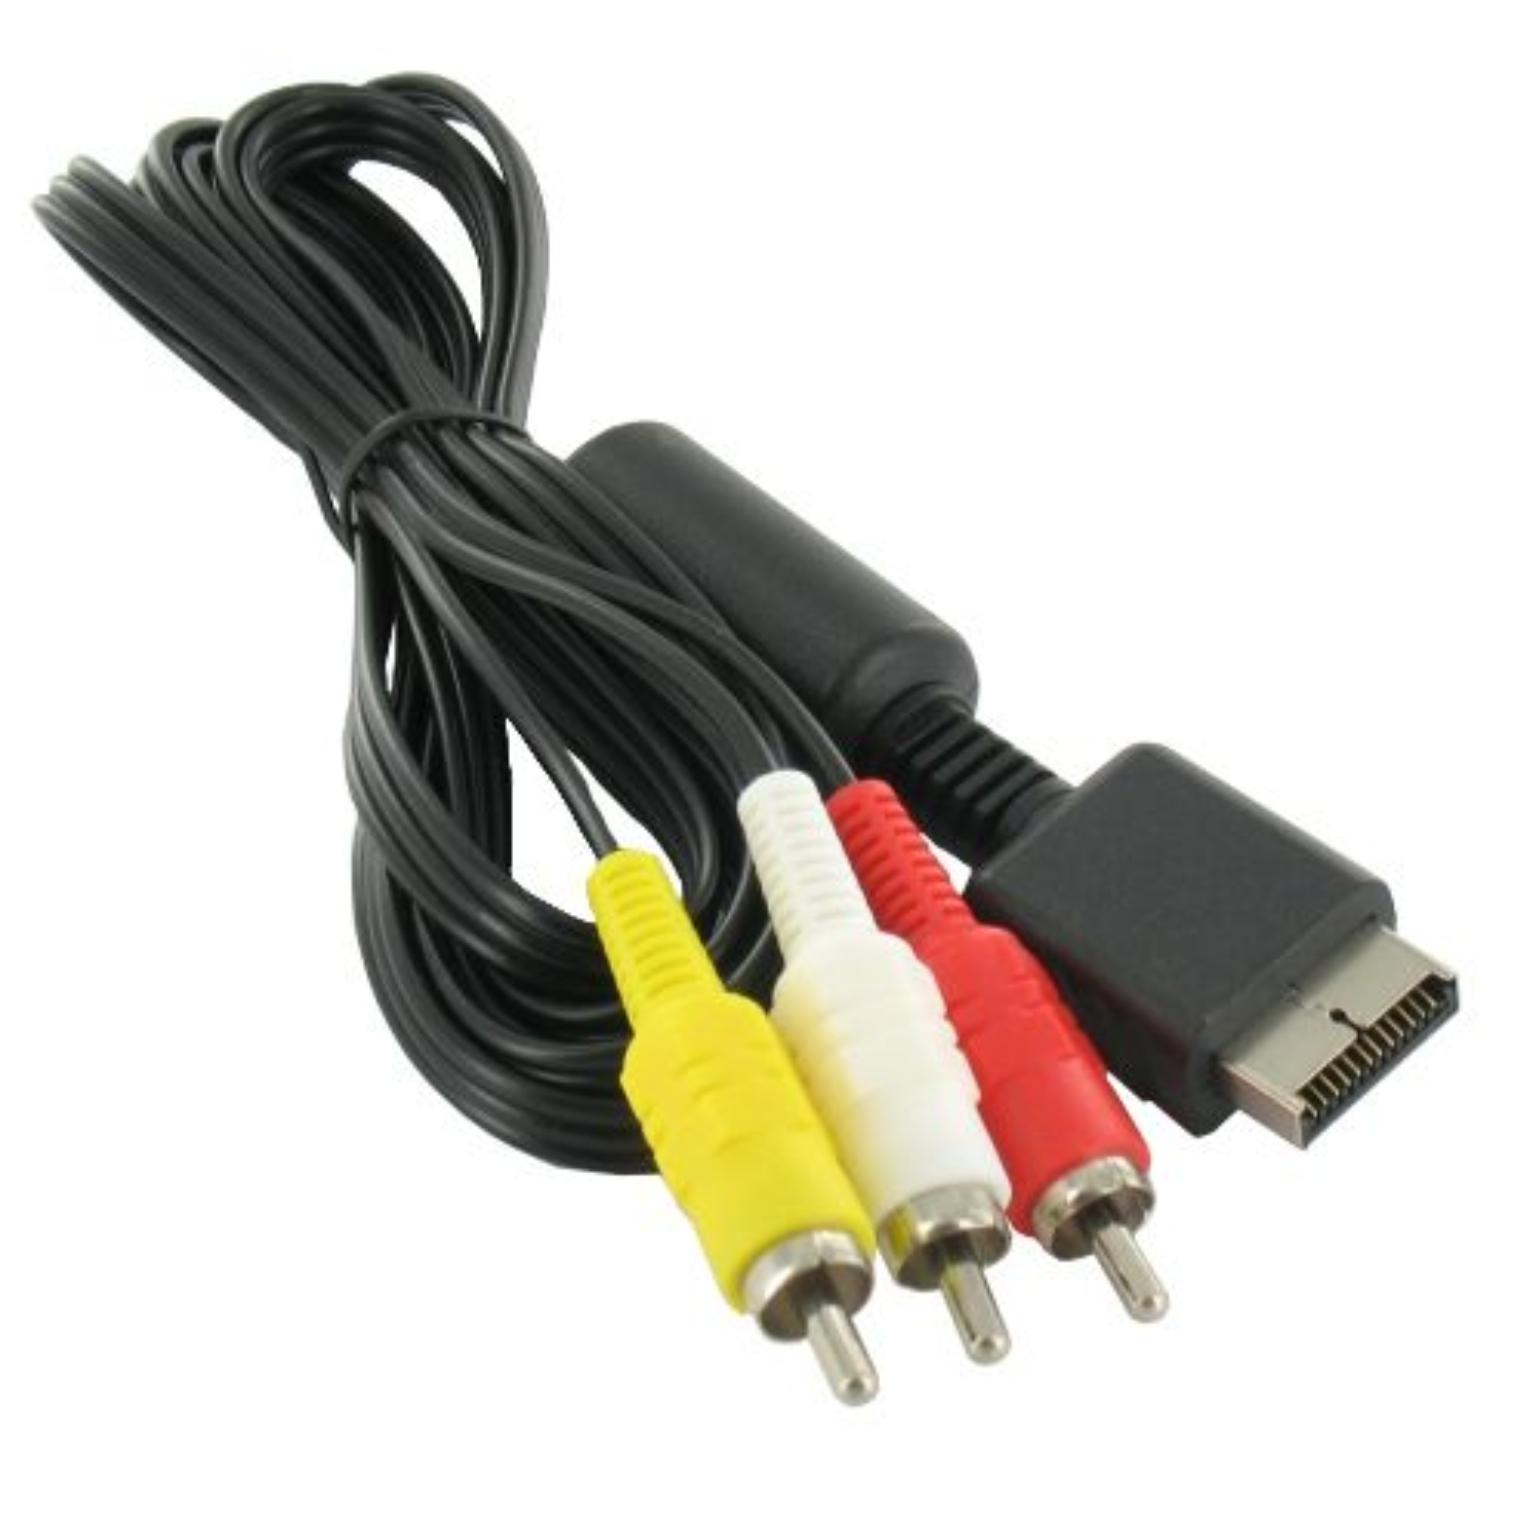 Soms soms mosterd binnen RGB AV Kabel voor Playstation 1, 2 en 3 - PSX kabel, Platform: PS1/PS2/PS3,  Aansluiting 1: PS2 Male, Aansluiting 2: 3x RCA Male, Lengte: 2 Meter,  Kleur: Zwart.